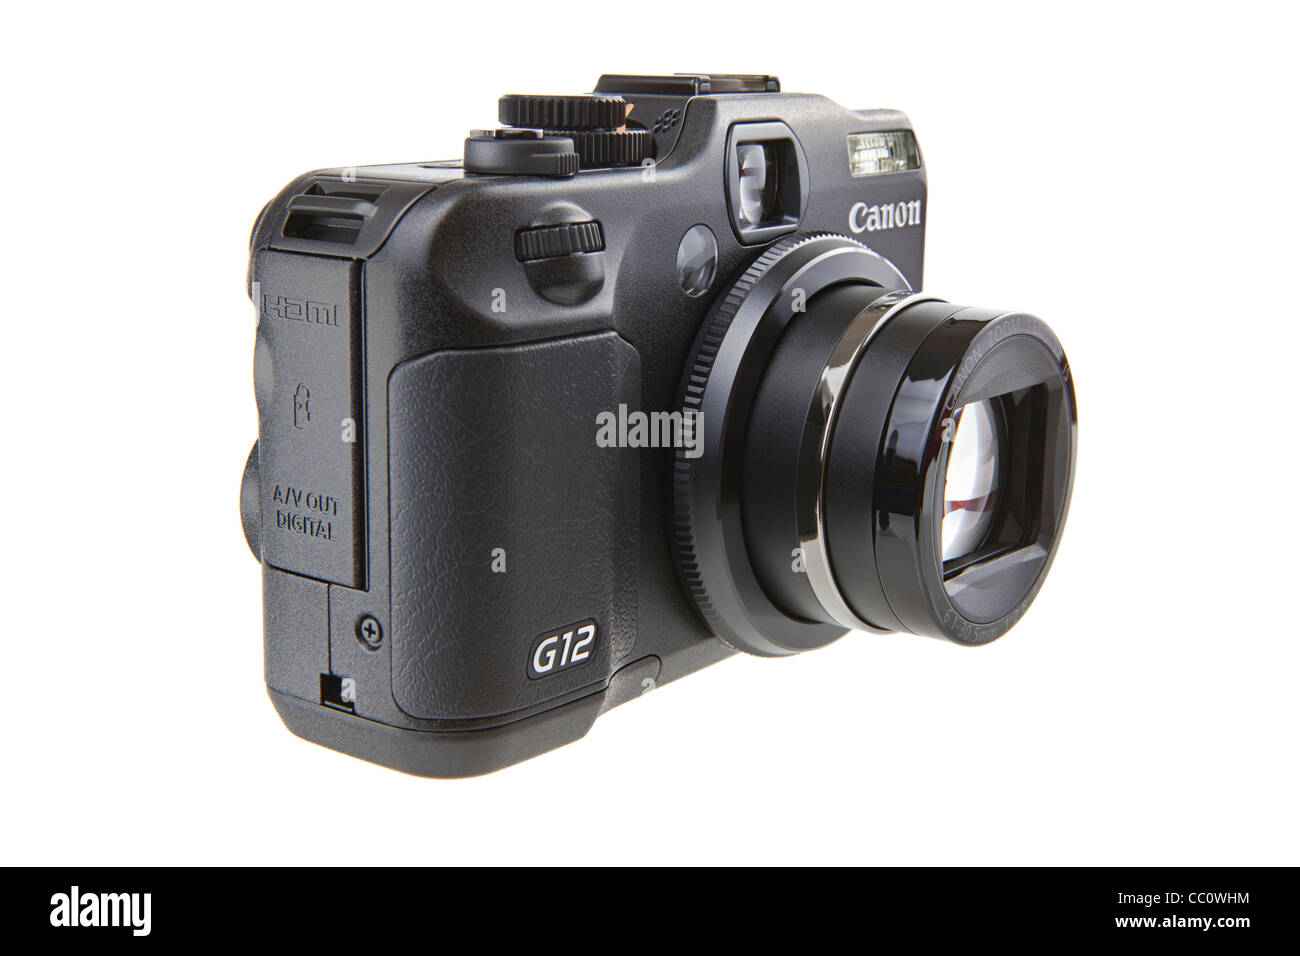 Canon G12 Kamera - Einzelhandel Produktaufnahmen vor reinen weißen Hintergrund fotografiert unter Studiobeleuchtung. Stockfoto